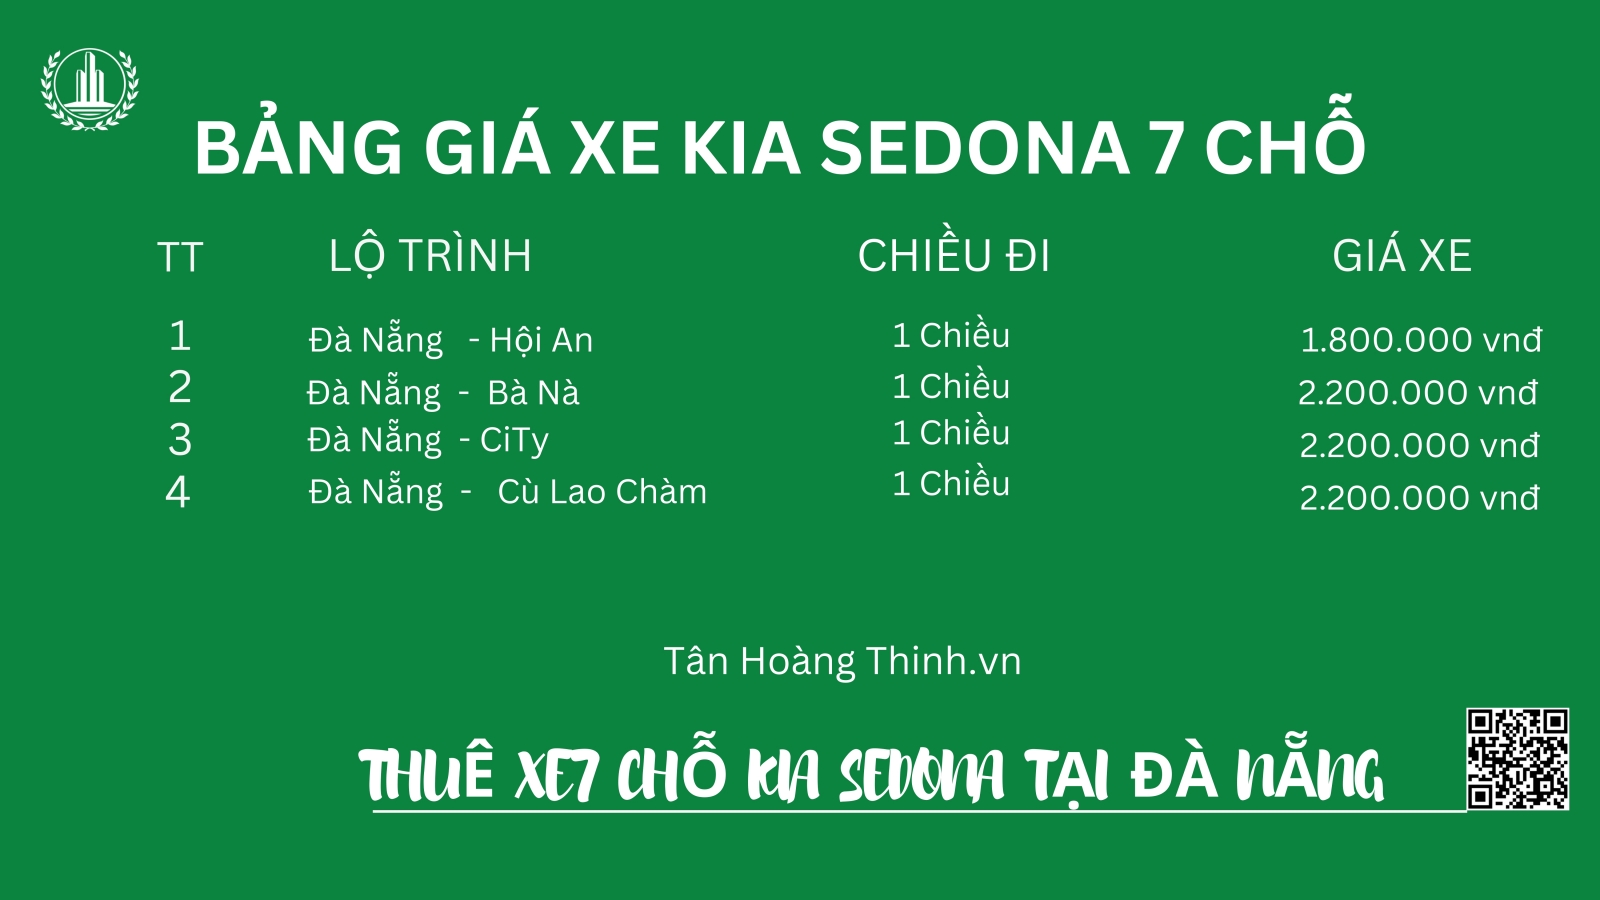 Bảng giá xe 7 chỗ Kia Sedona ở Đà Nẵng giá rẻ chất lượng